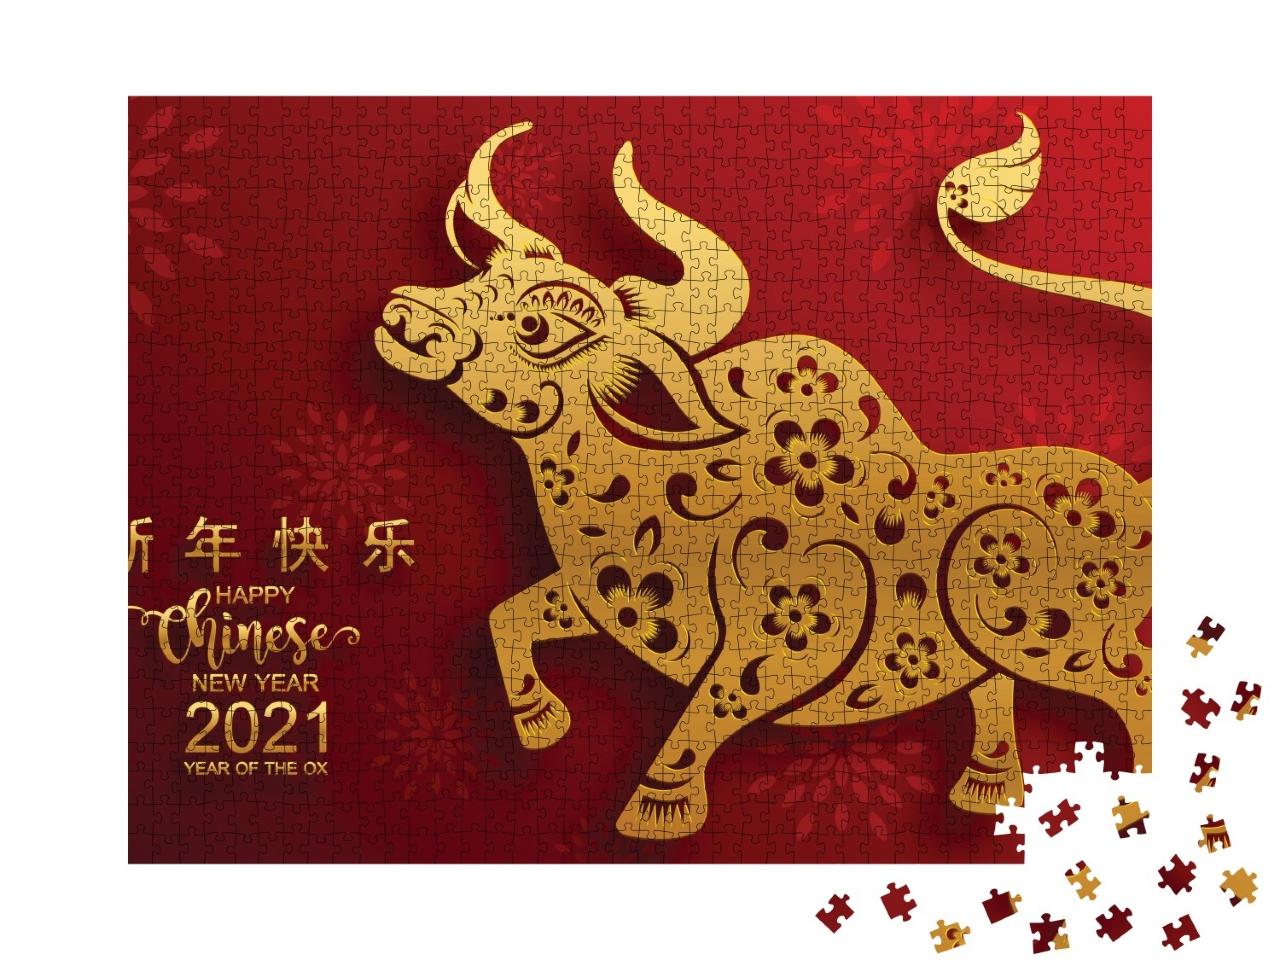 Puzzle de 1000 pièces « Nouvelle année chinoise 2021, année du bœuf, en rouge et or »